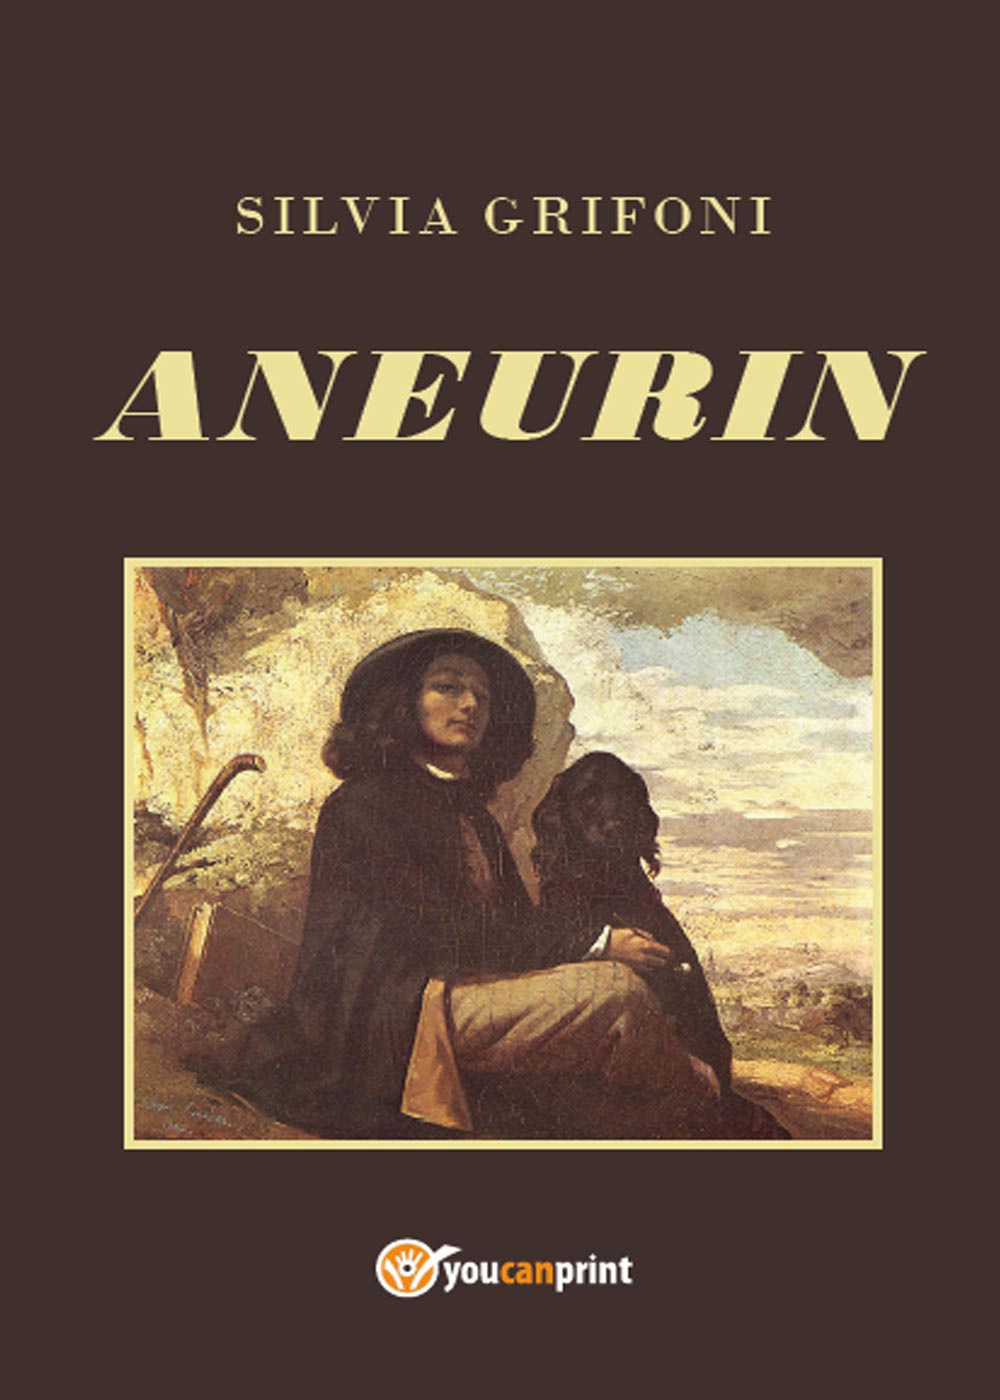 Libri Silvia Grifoni - Aneurin NUOVO SIGILLATO, EDIZIONE DEL 01/11/2015 SUBITO DISPONIBILE